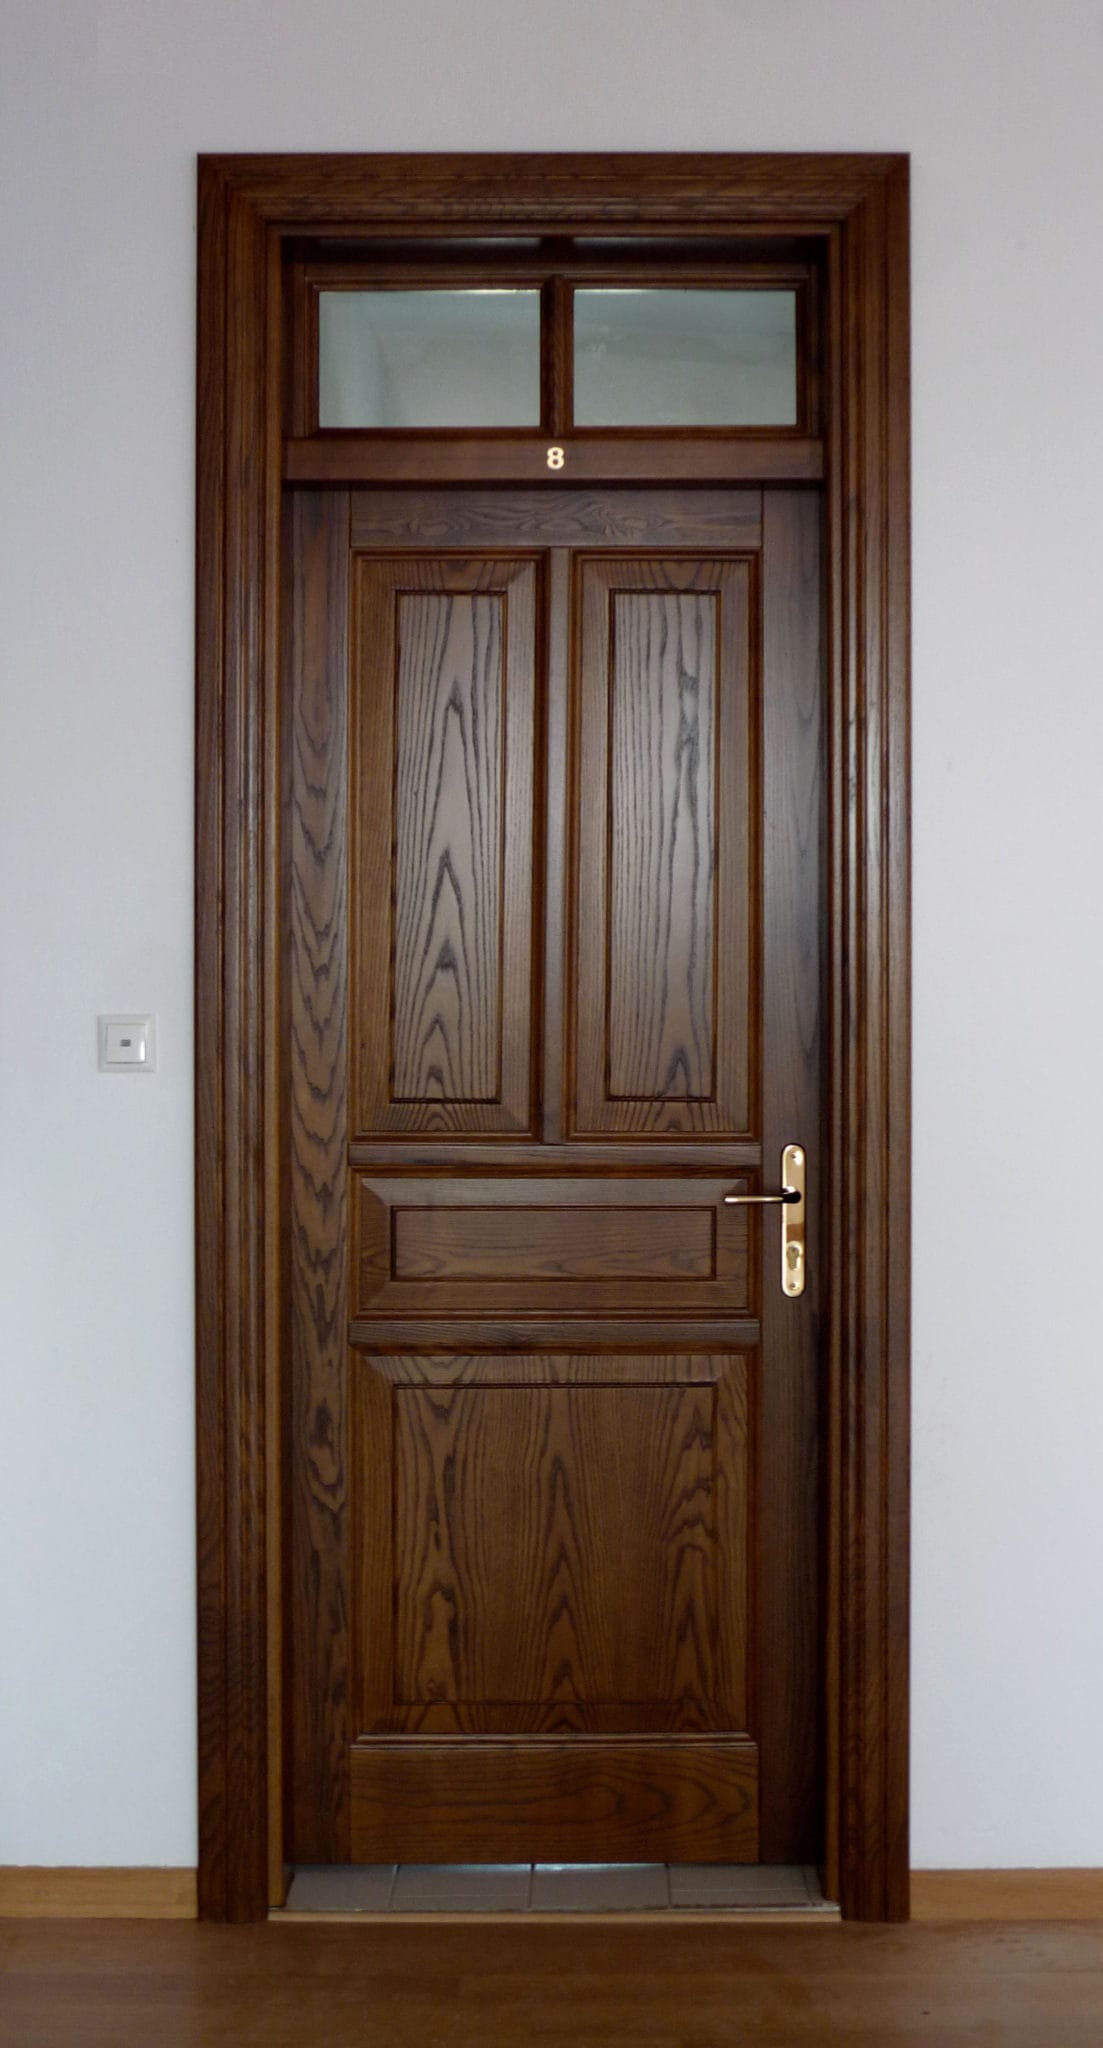 wooden interior door with ventilation skylight